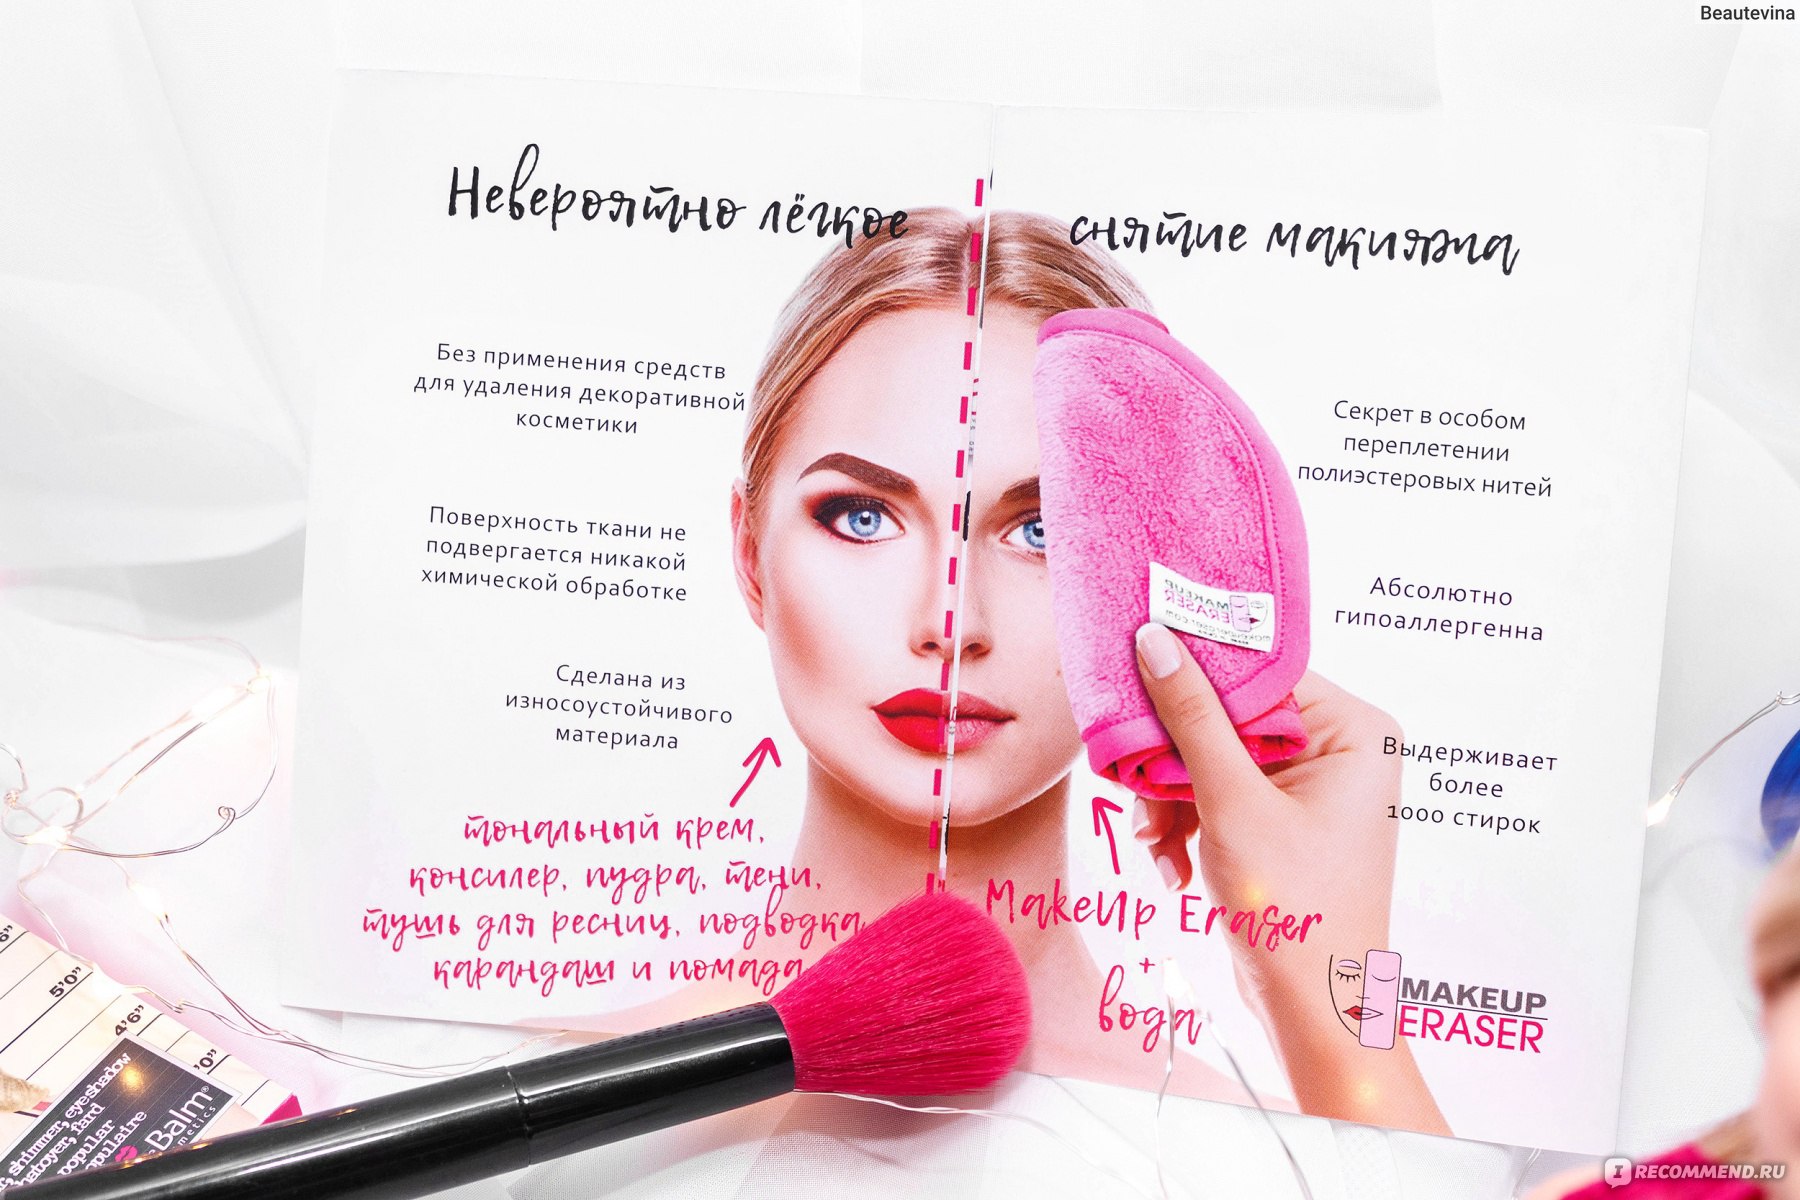 Санитарные нормы в beauty -индустрии
спикер – елена варнавских
‖ презентация, доклад, проект